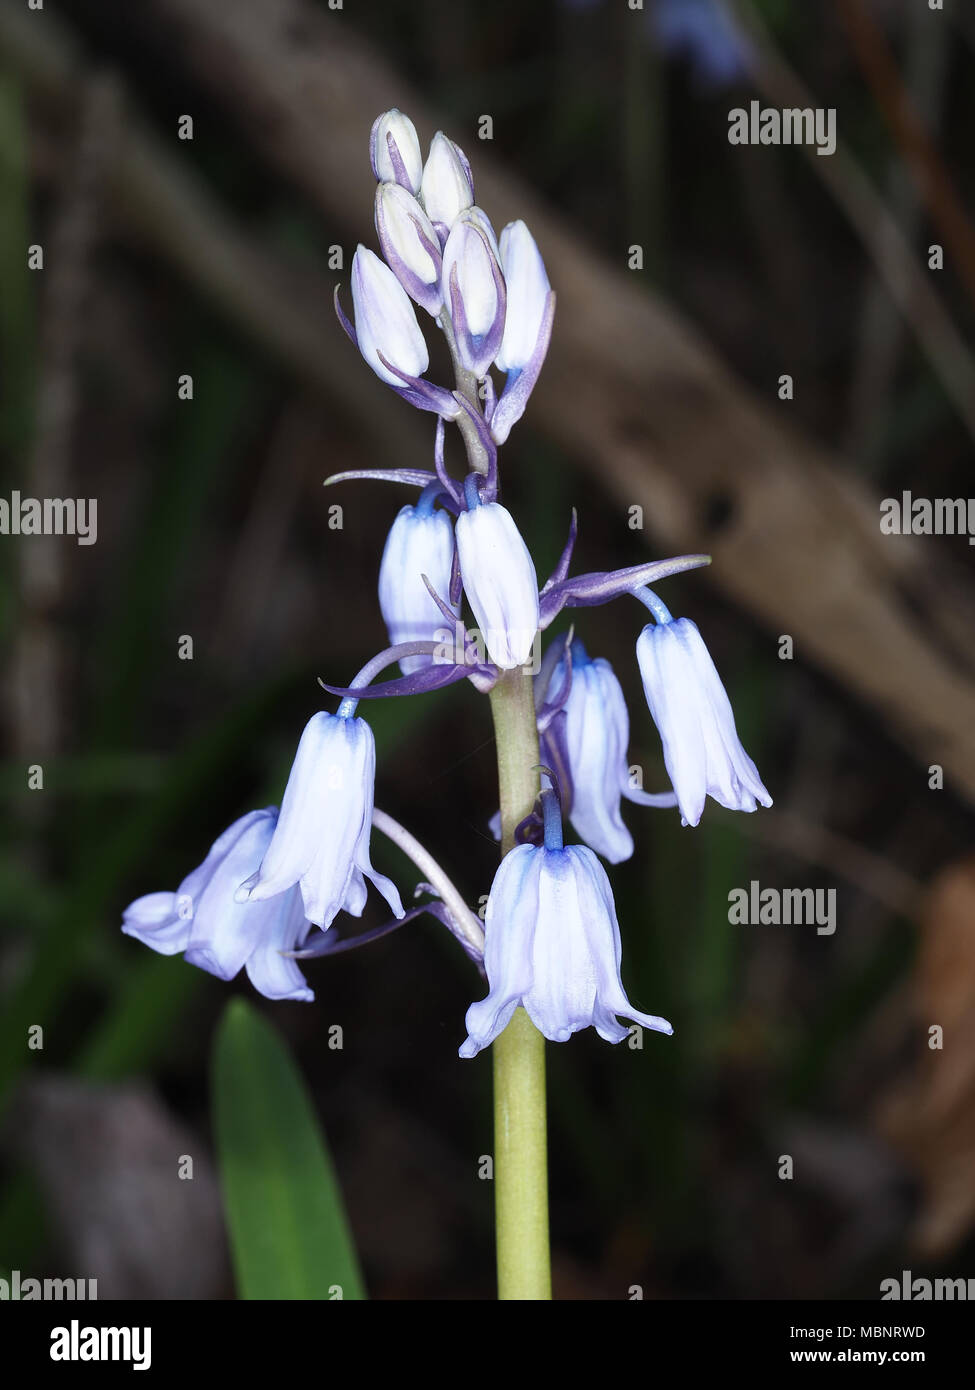 Spanish bluebell (Hyacinthoides ×variabilis or Hyacinthoides hispanica) flowers close-up Stock Photo